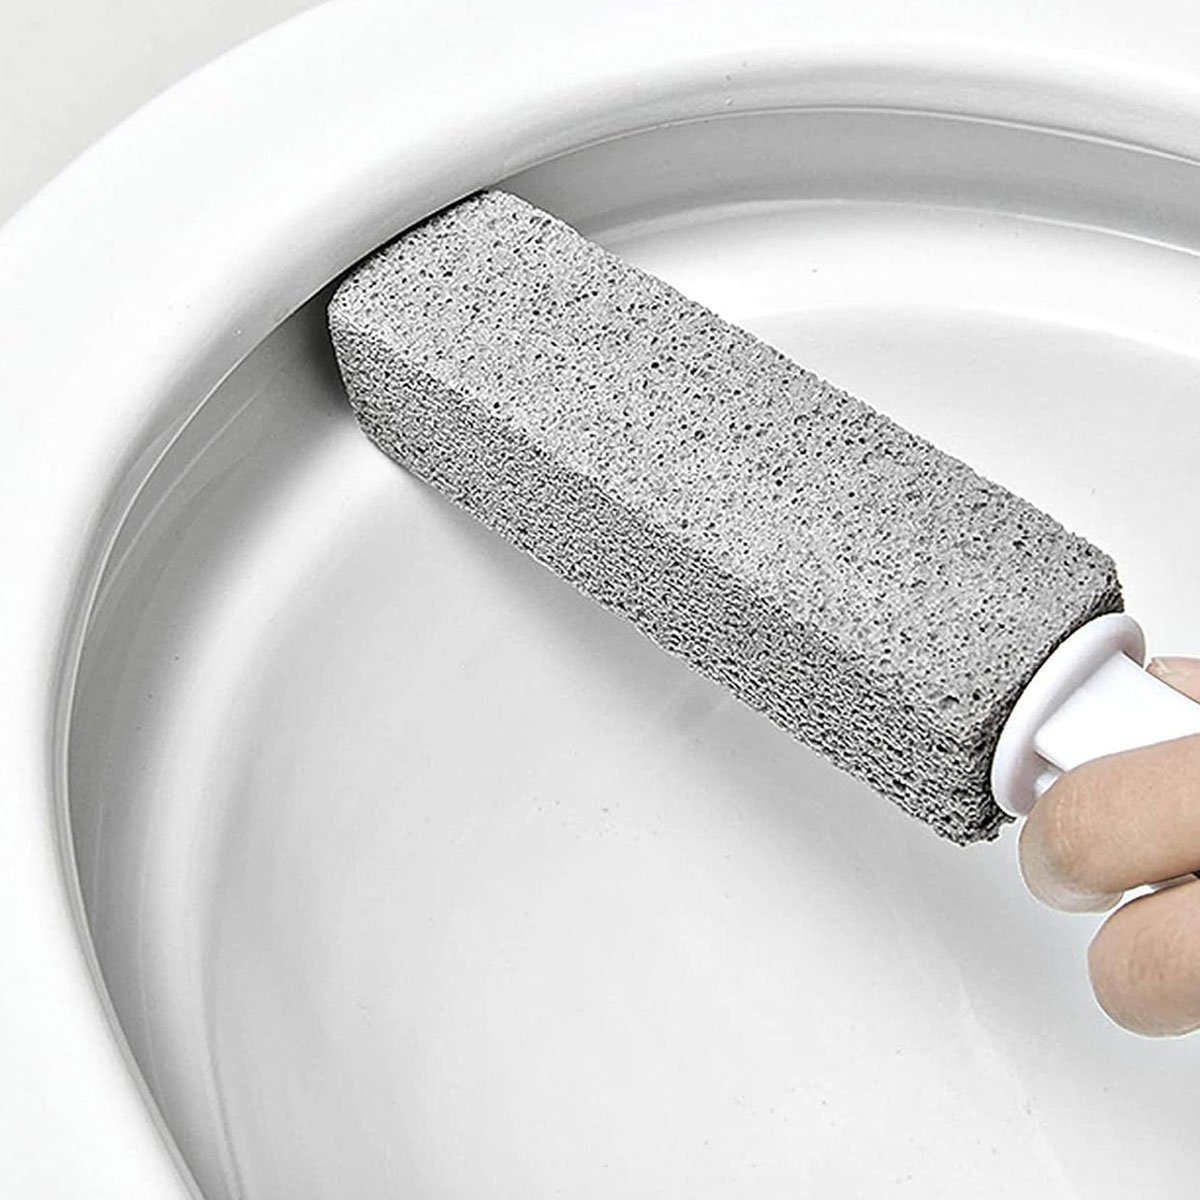 Bimsstein Toilette Cleaning Block Griff,für Toilette-Reinigungsstein Jormftte WC, mit